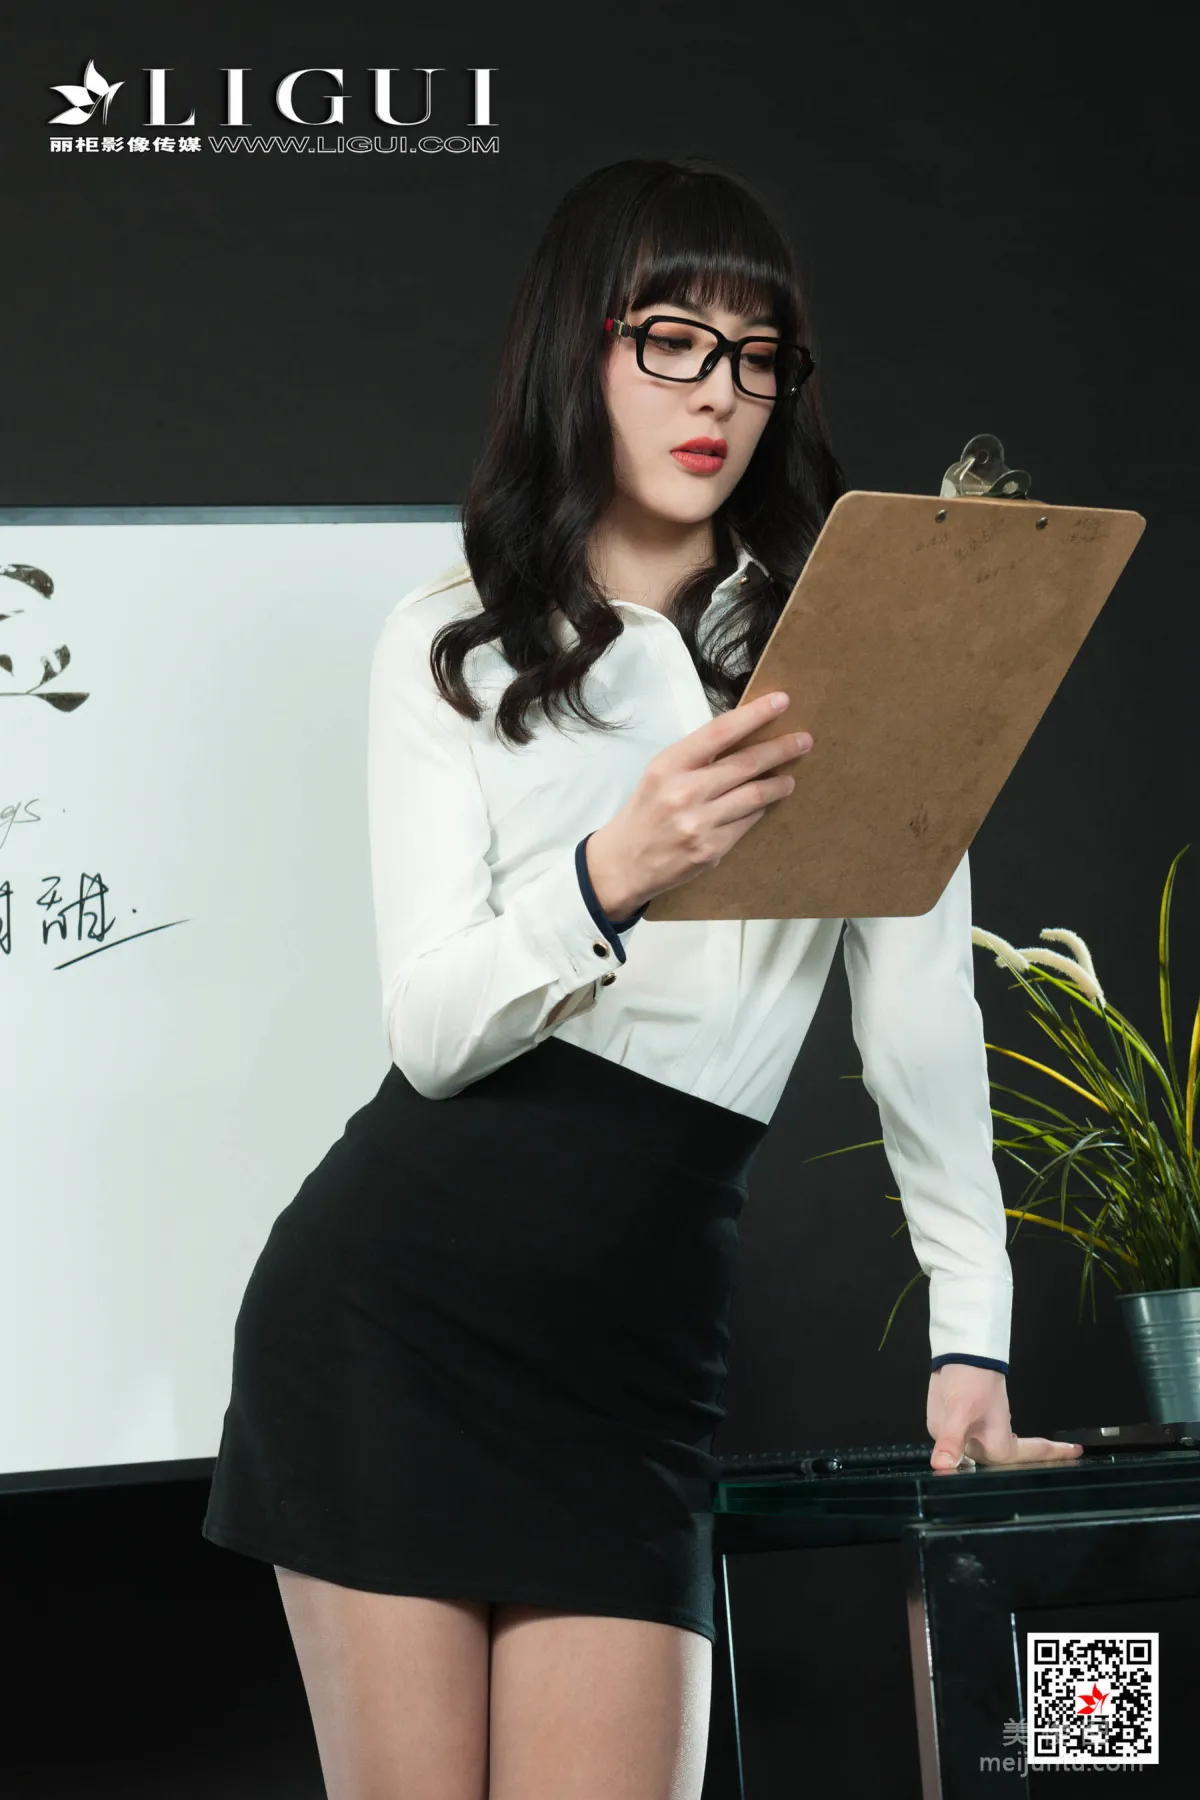 [丽柜Ligui] 网络丽人 Model 芒果 - 灰丝OL长腿秘书7